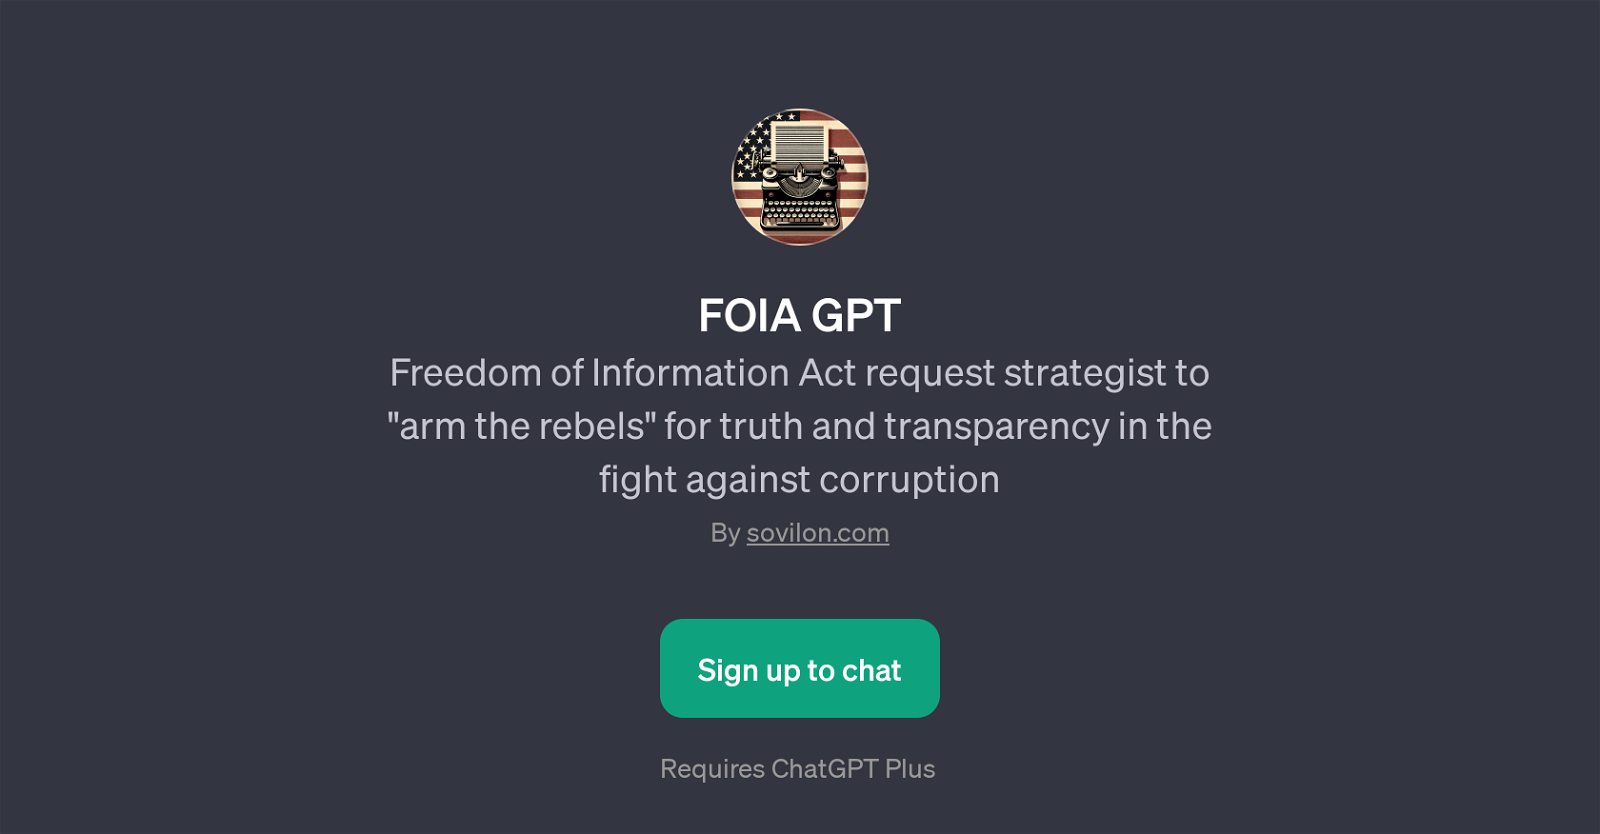 FOIA GPT website